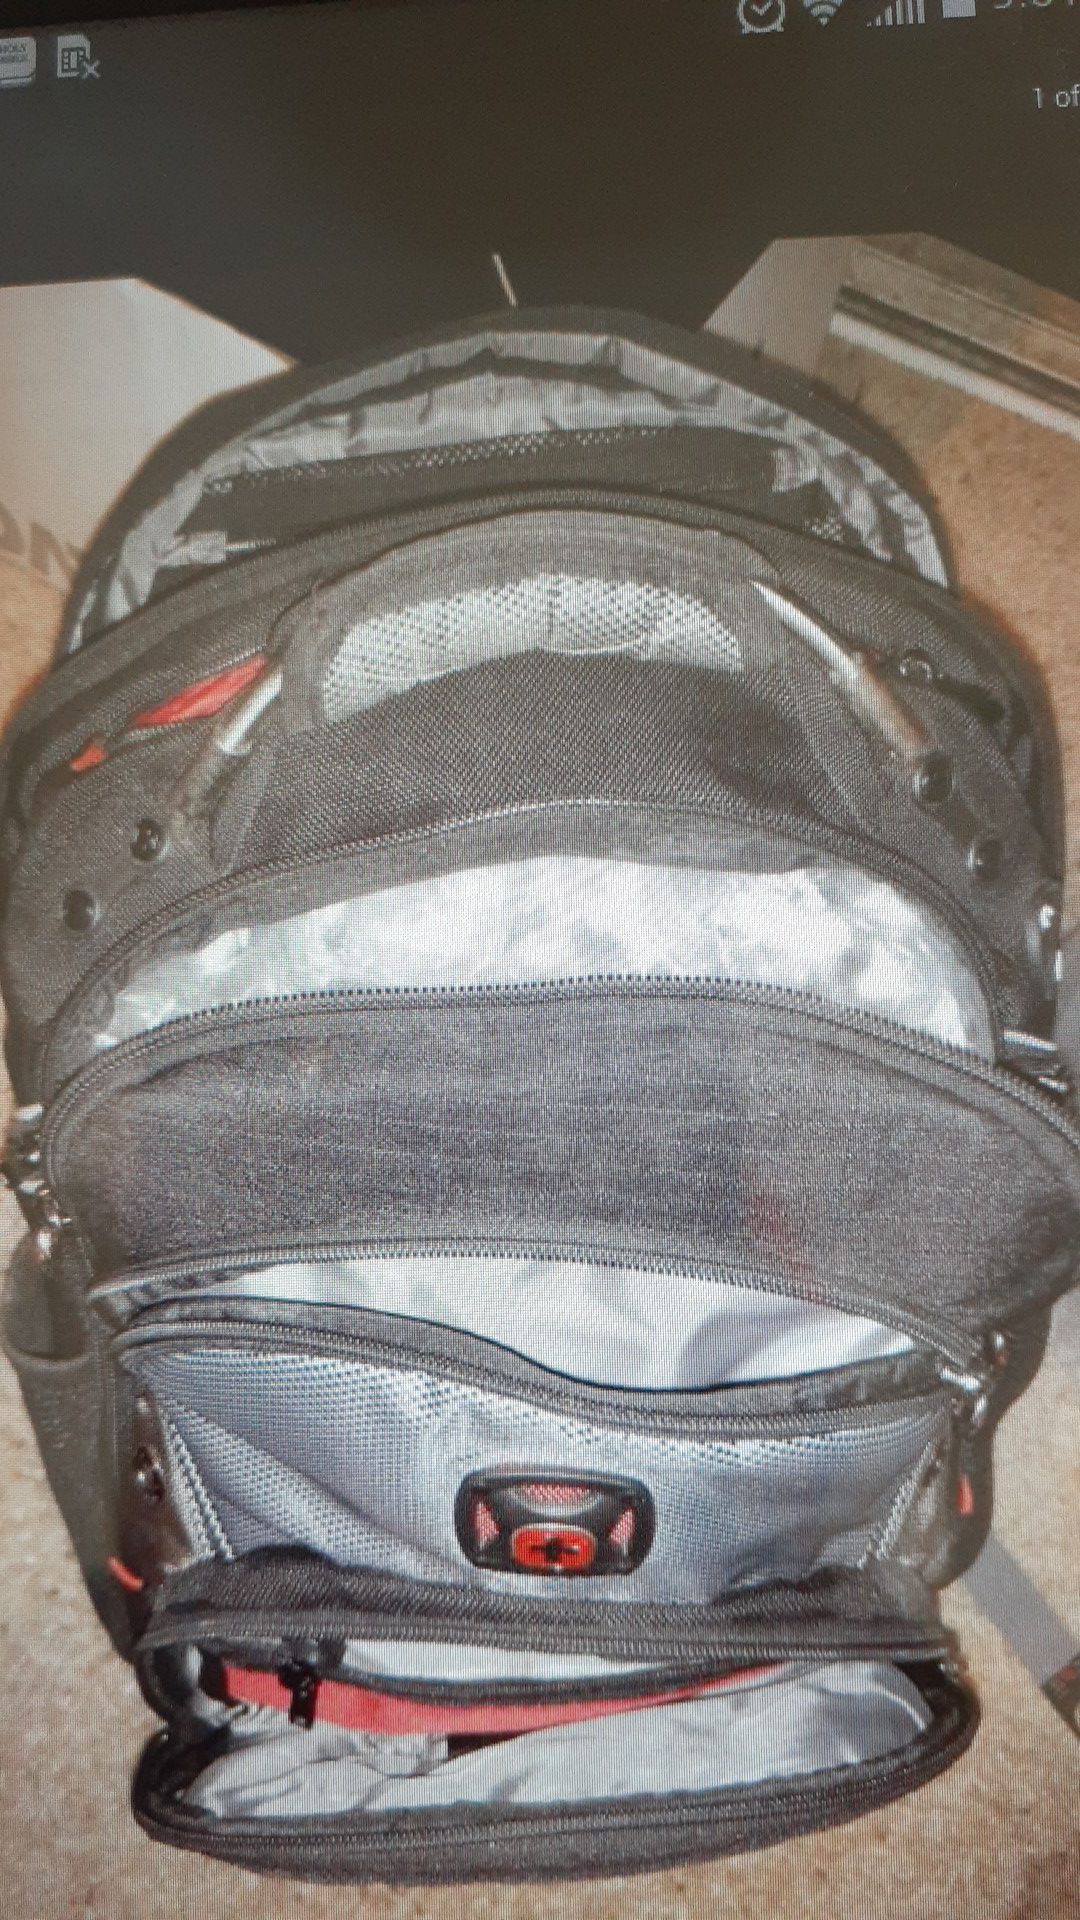 Swiss Gear. Laptop backpack.